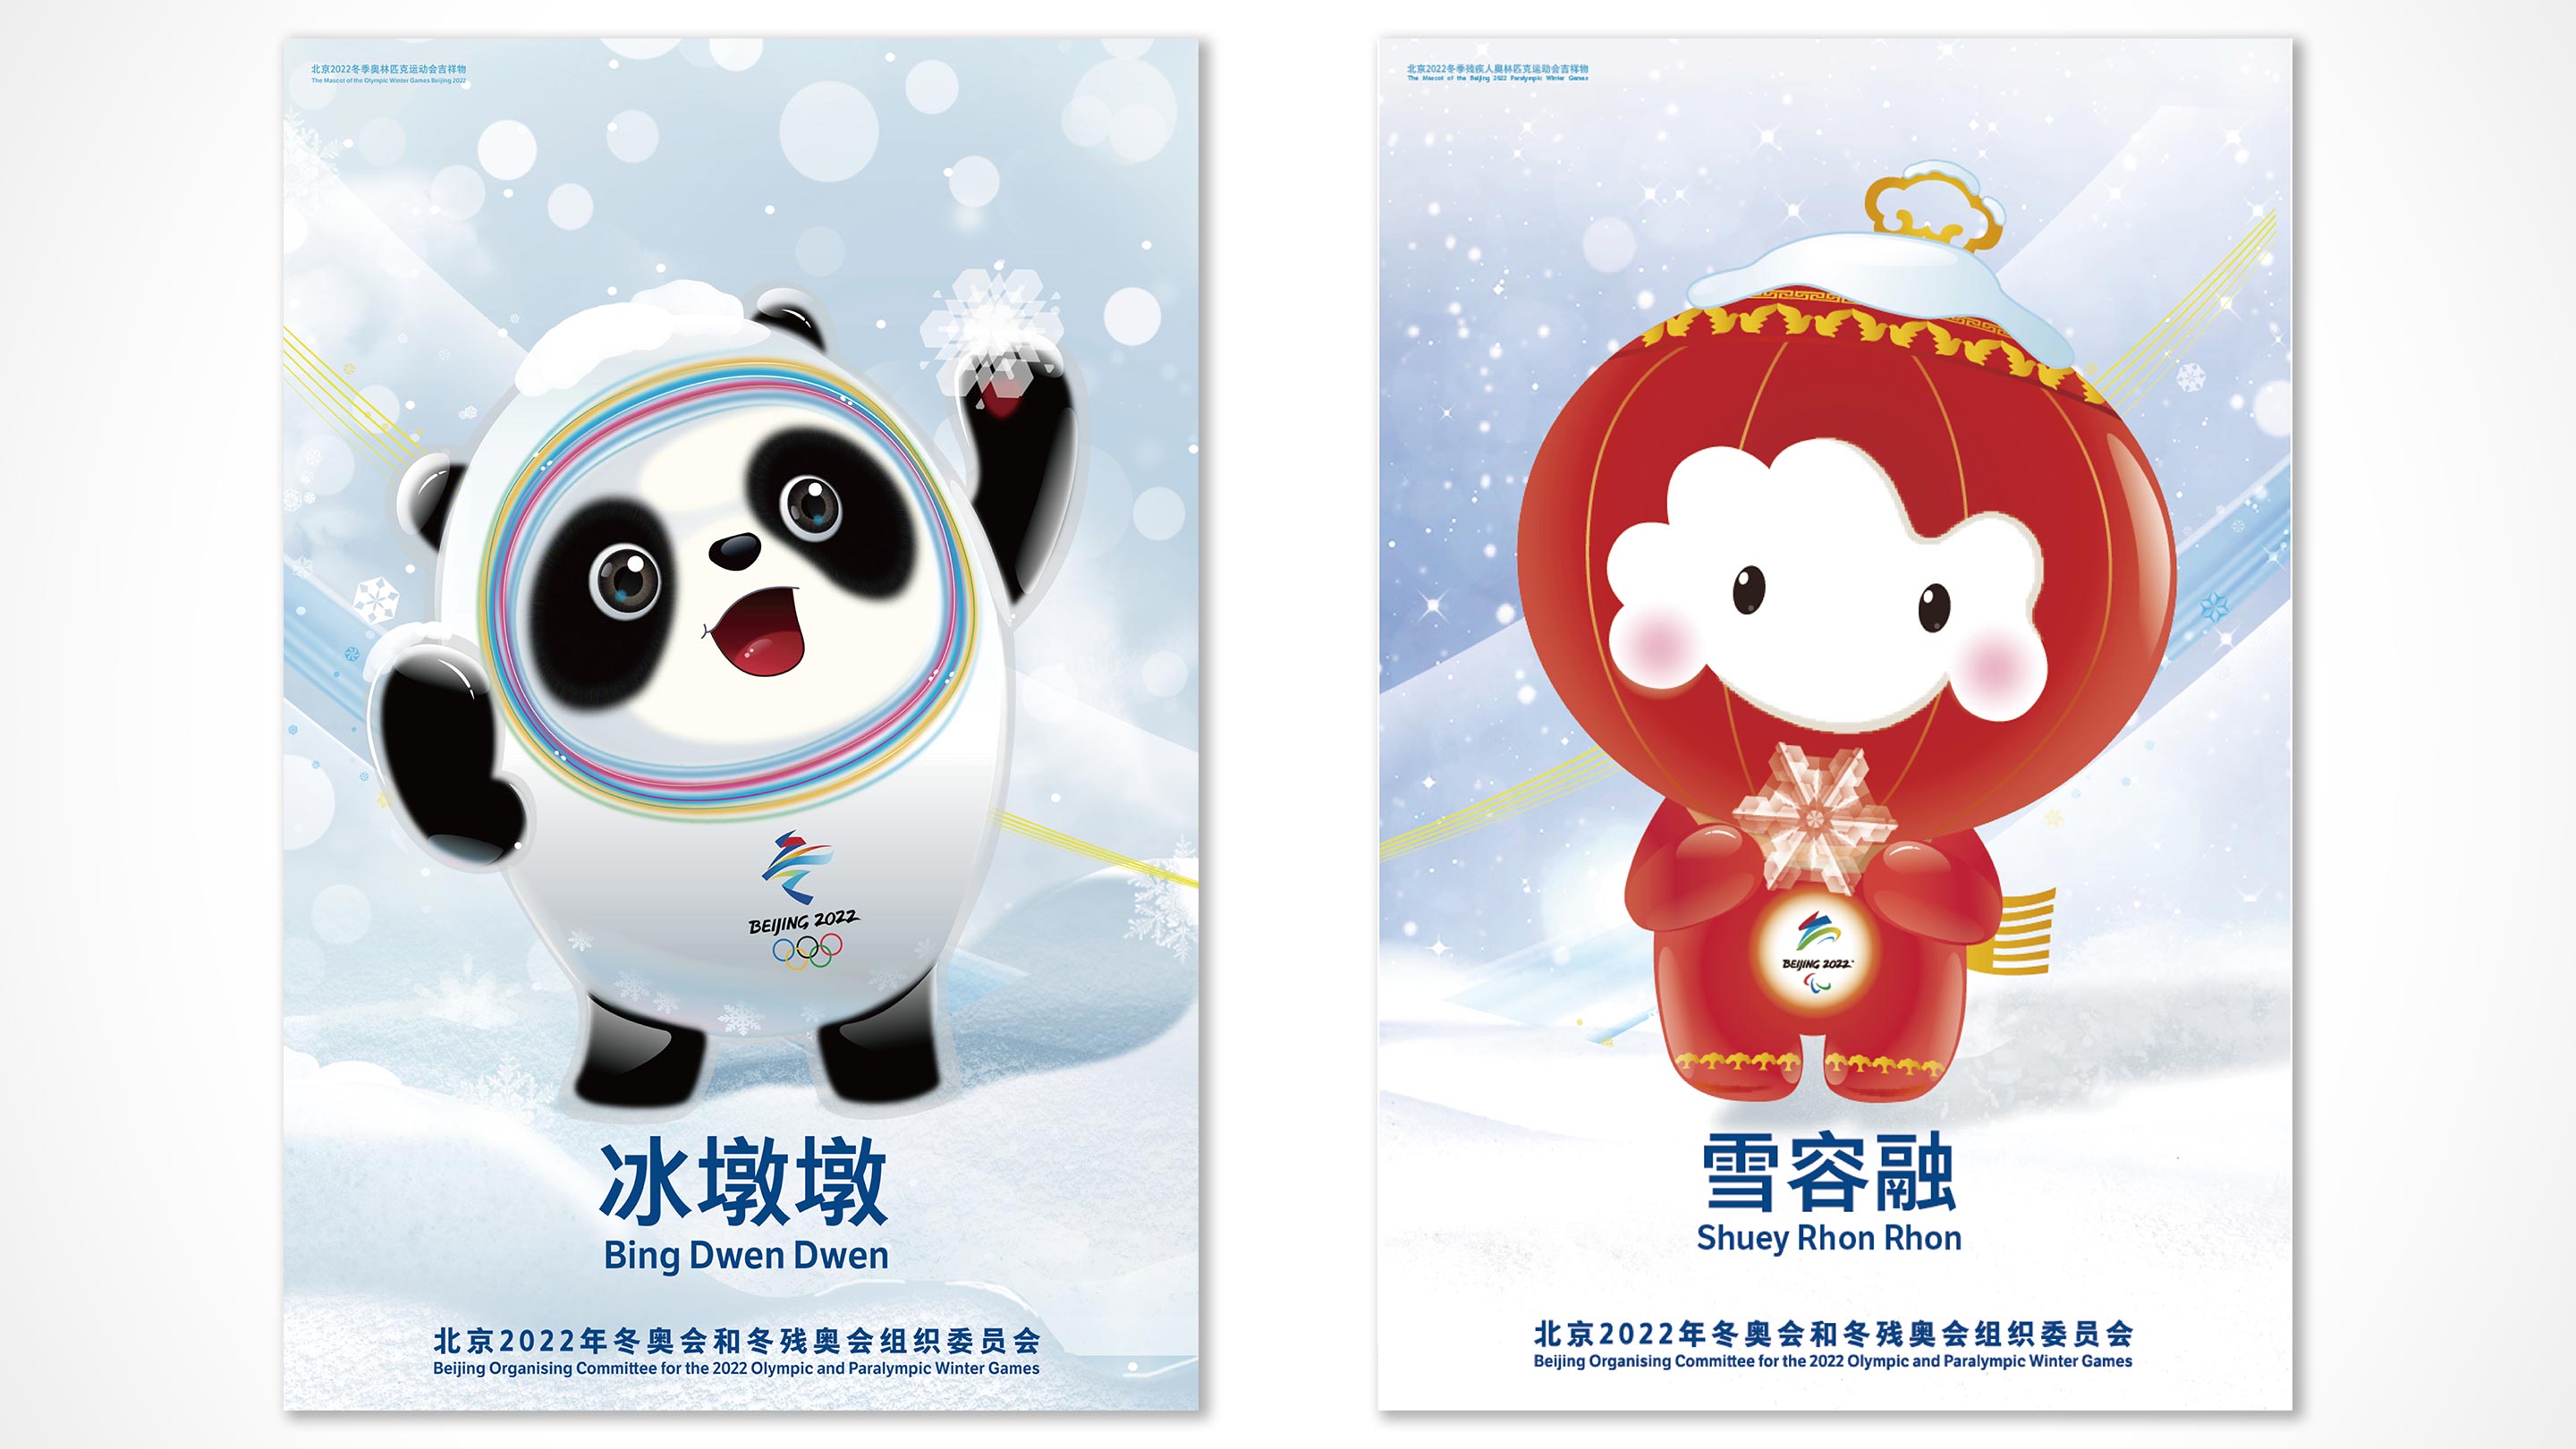 талисманы пекинской олимпиады как зовут фото